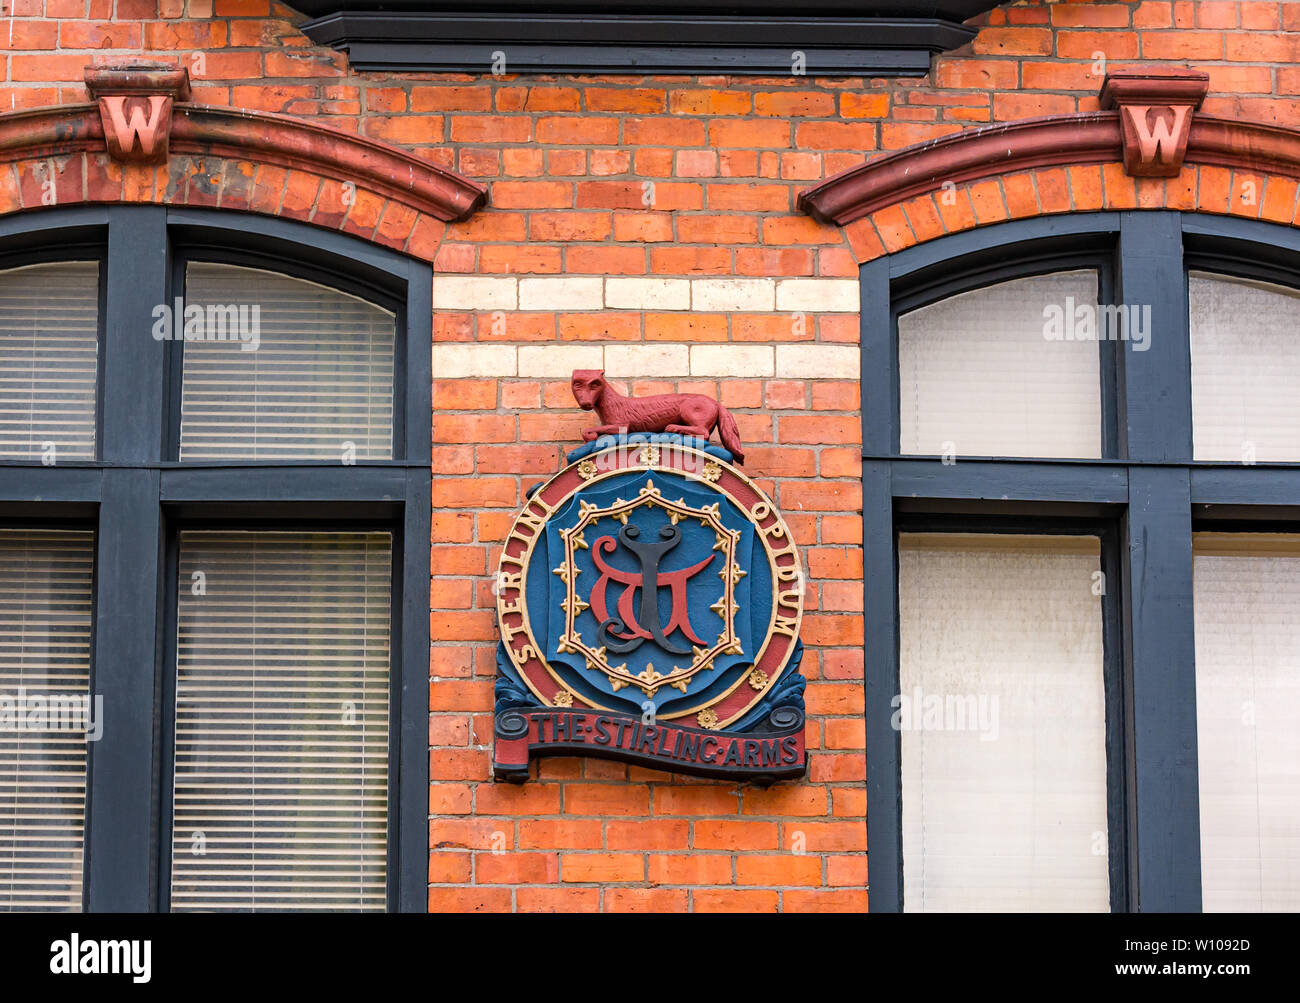 Nahaufnahme des heraldischen Wappen auf alten Backsteingebäude, St John Street, Stirling, Stirling, Schottland, Großbritannien Stockfoto